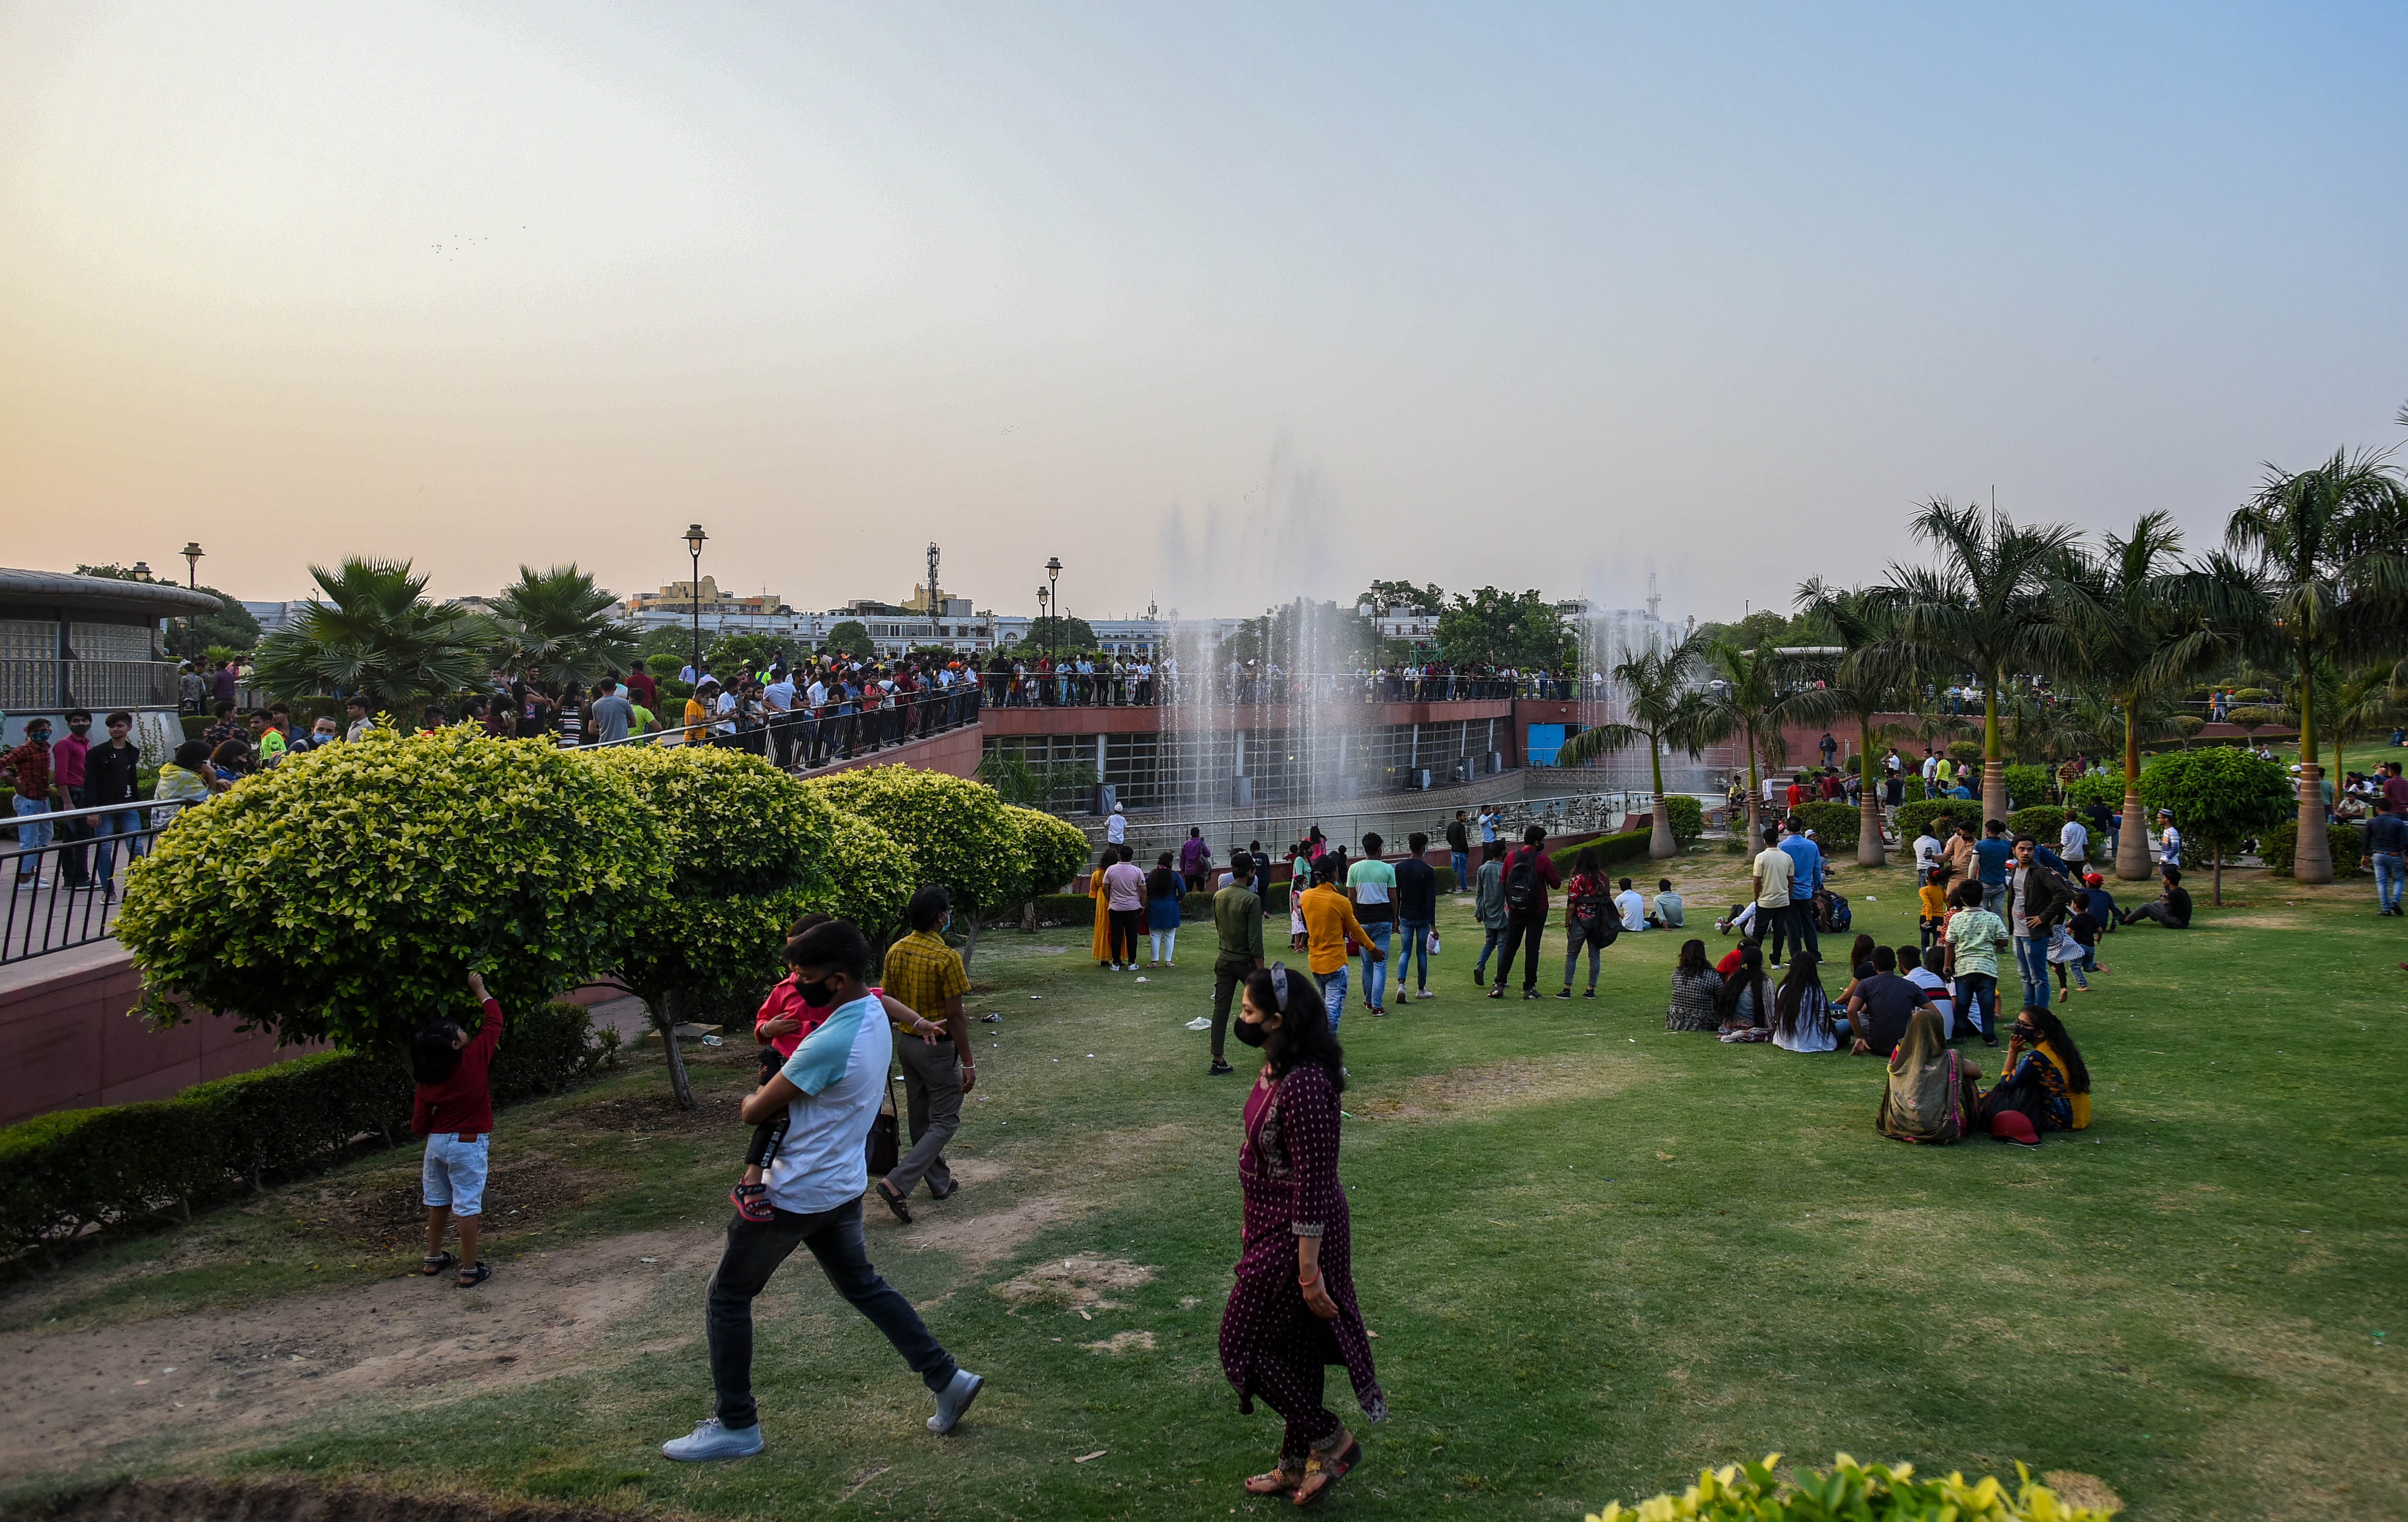 नई दिल्ली, भारत में कनॉट प्लेस सेंट्रल पार्क, (अमल केएस / एचटी फोटो) में, मामलों में वृद्धि के बीच लोग कोविद के मानदंडों की धज्जियां उड़ाते हैं।